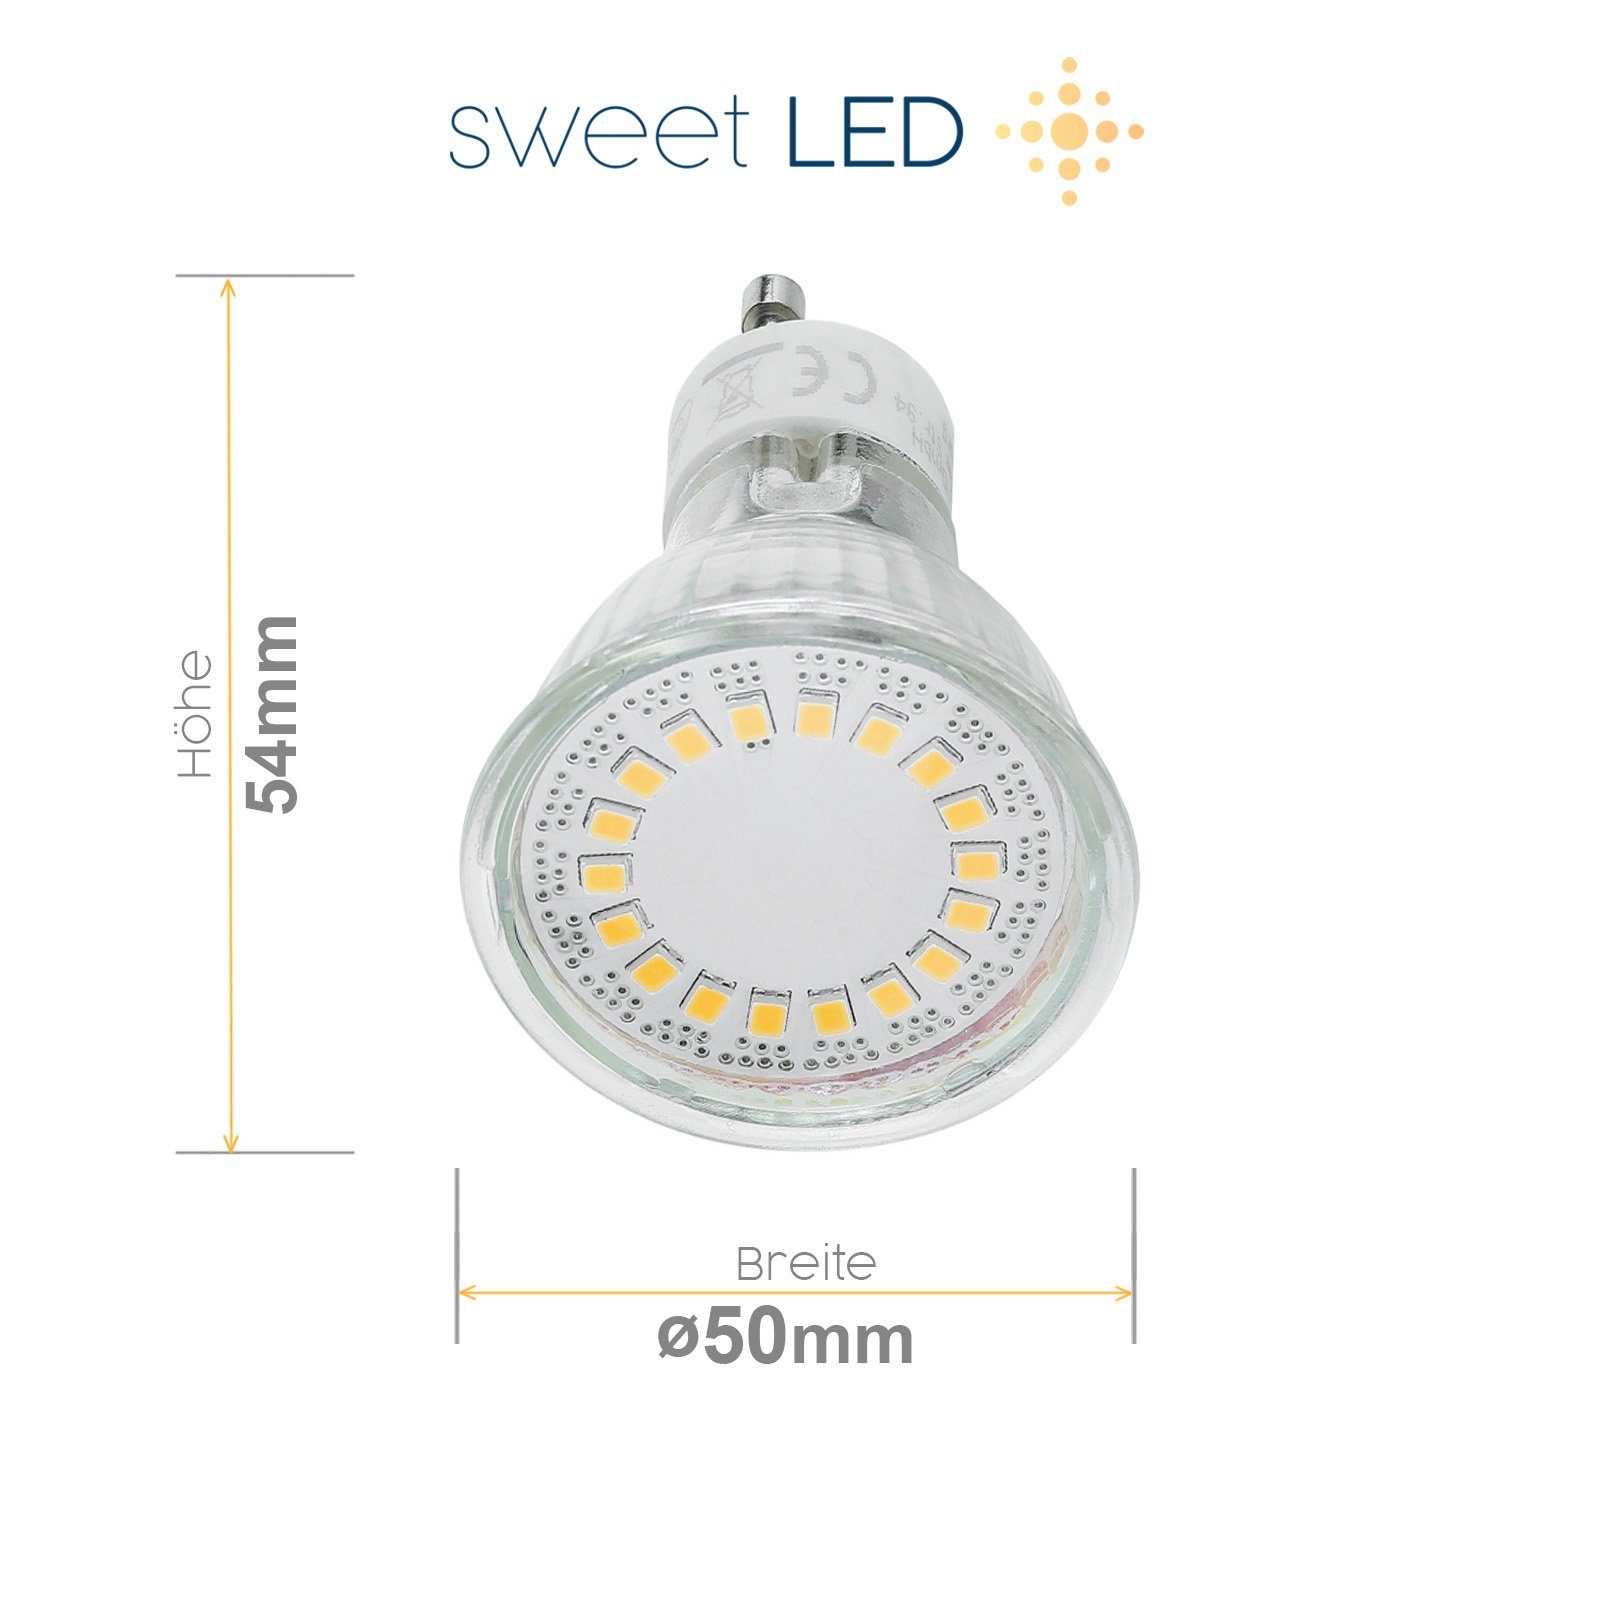 Sweet LED LED GU10 Aluminium Leuchtmittel weiß 5W Deckenspots Deckenspot, spots Deckenaufbaustrahler Aufbauspot 230V, wechselbar, Warmweiß, Aufbaustrahler